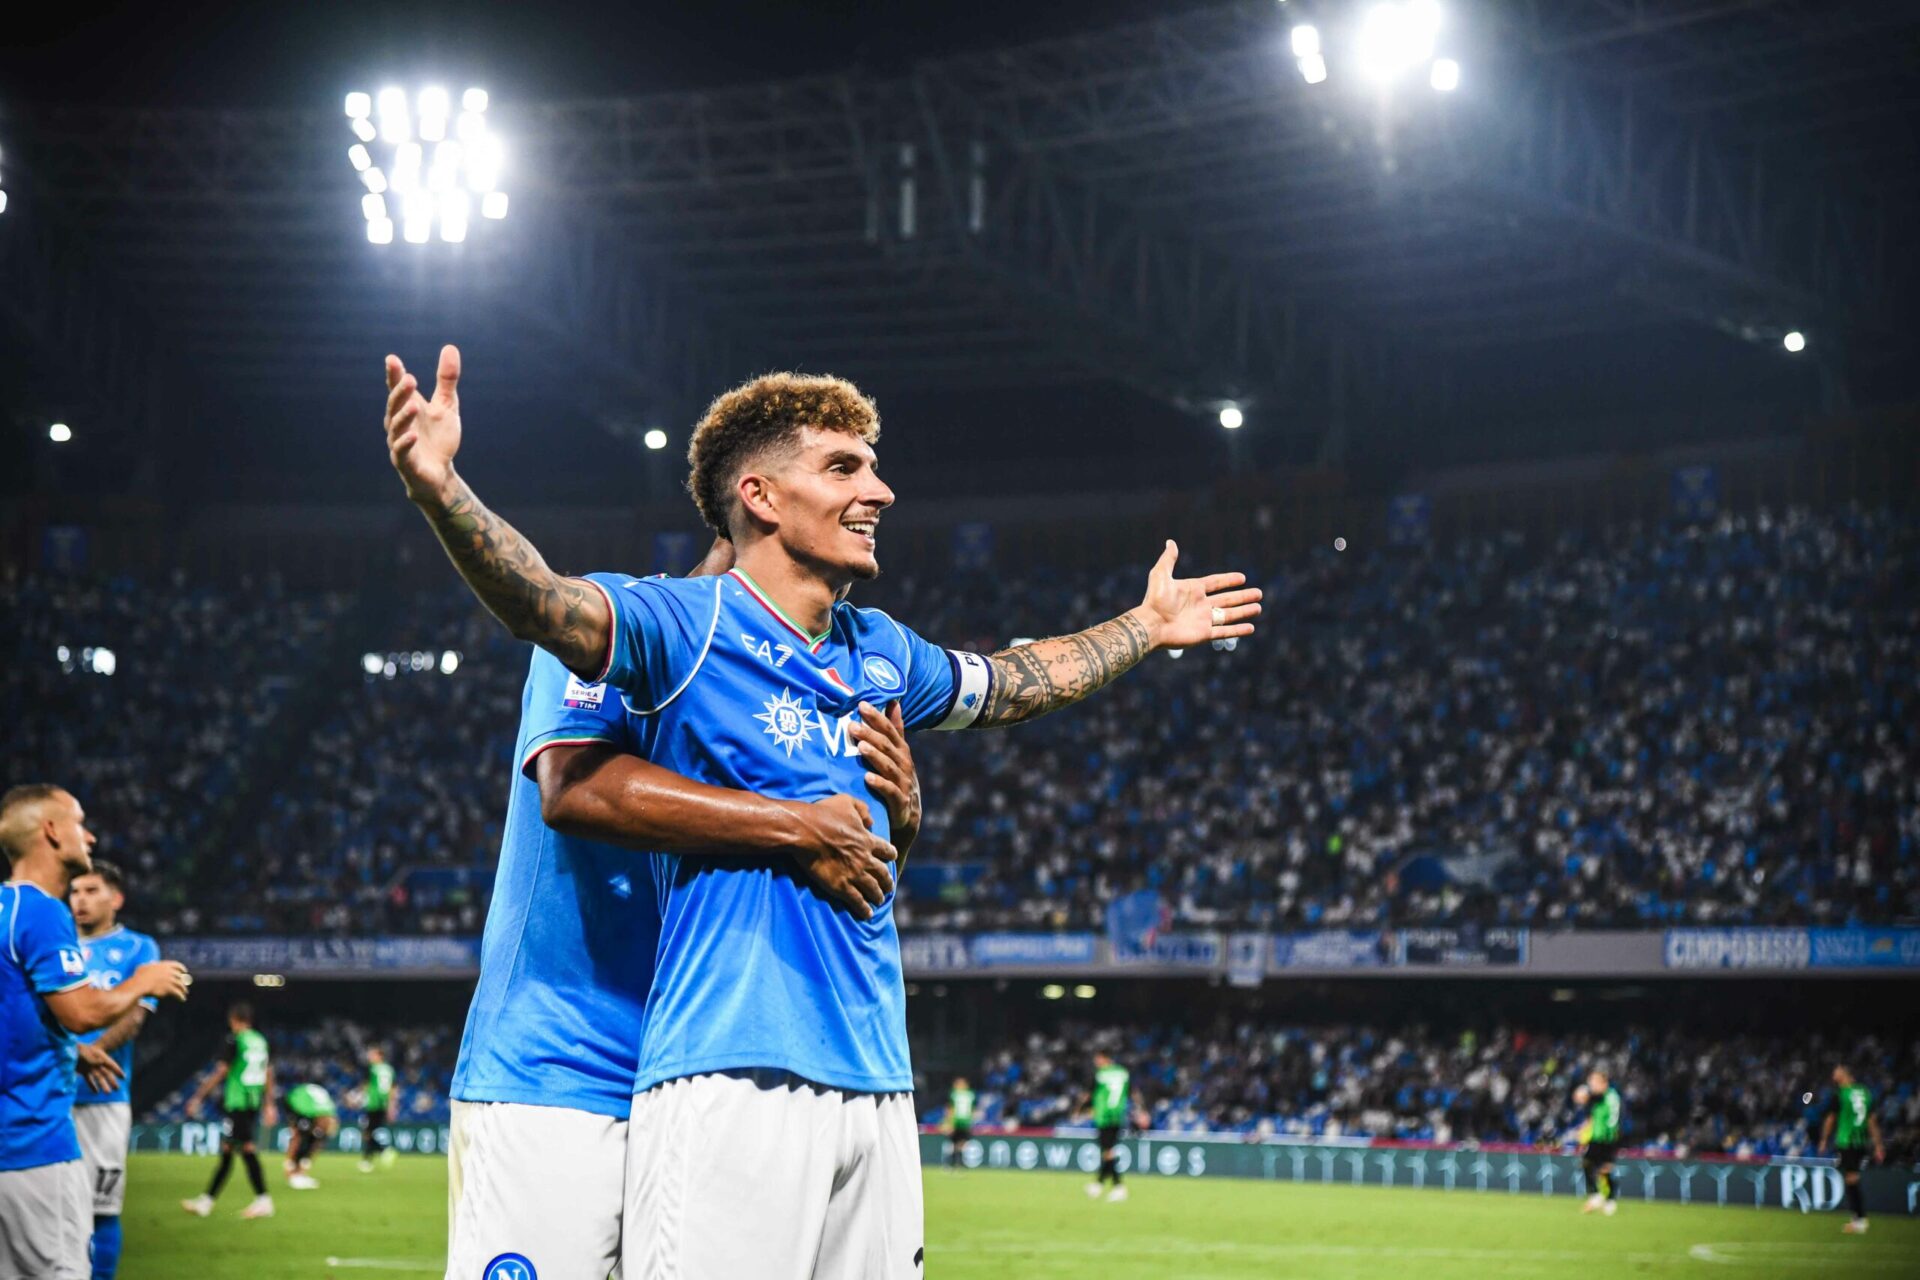 Giovanni Di Lorenzo ha realizzato il gol del 2-0 contro il Sassuolo: "Felice per aver segnato, adesso avanti così"